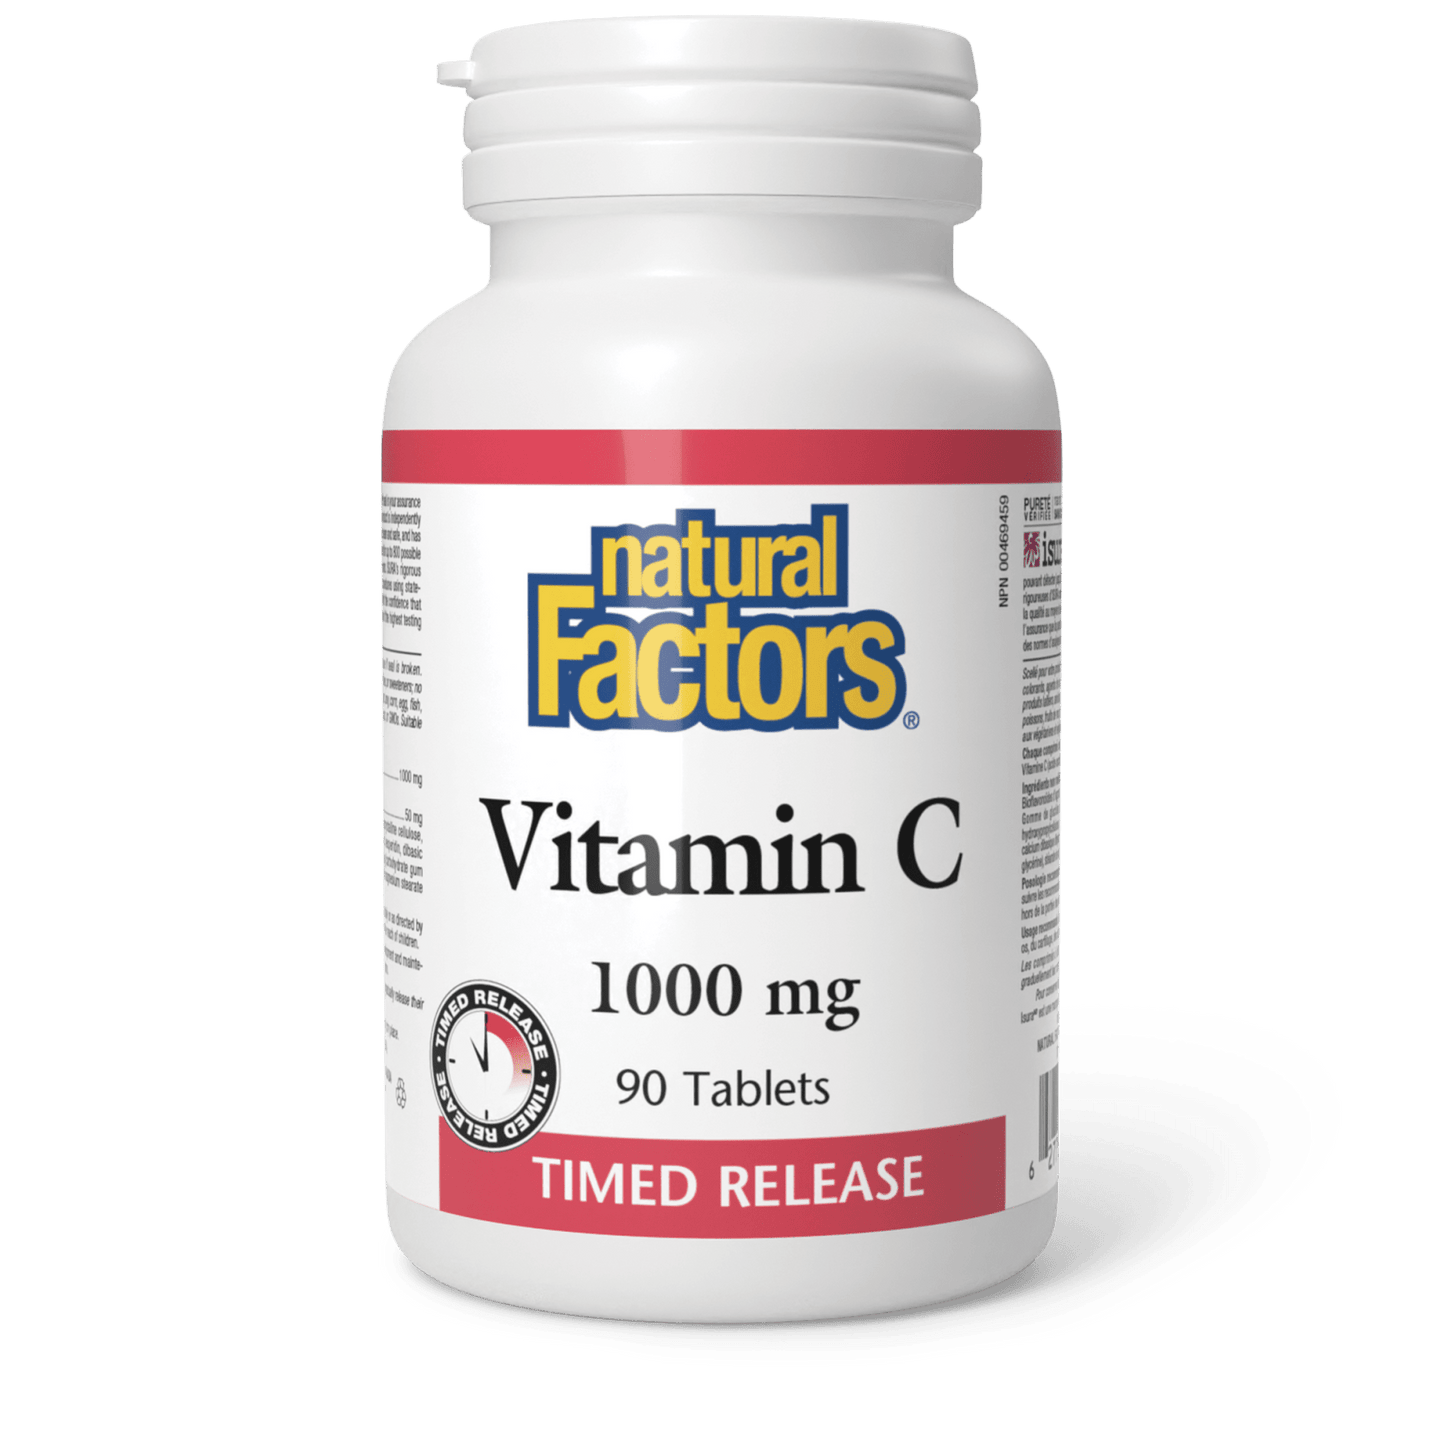 Vitamin C Time Release 1000 mg, Natural Factors|v|image|1341